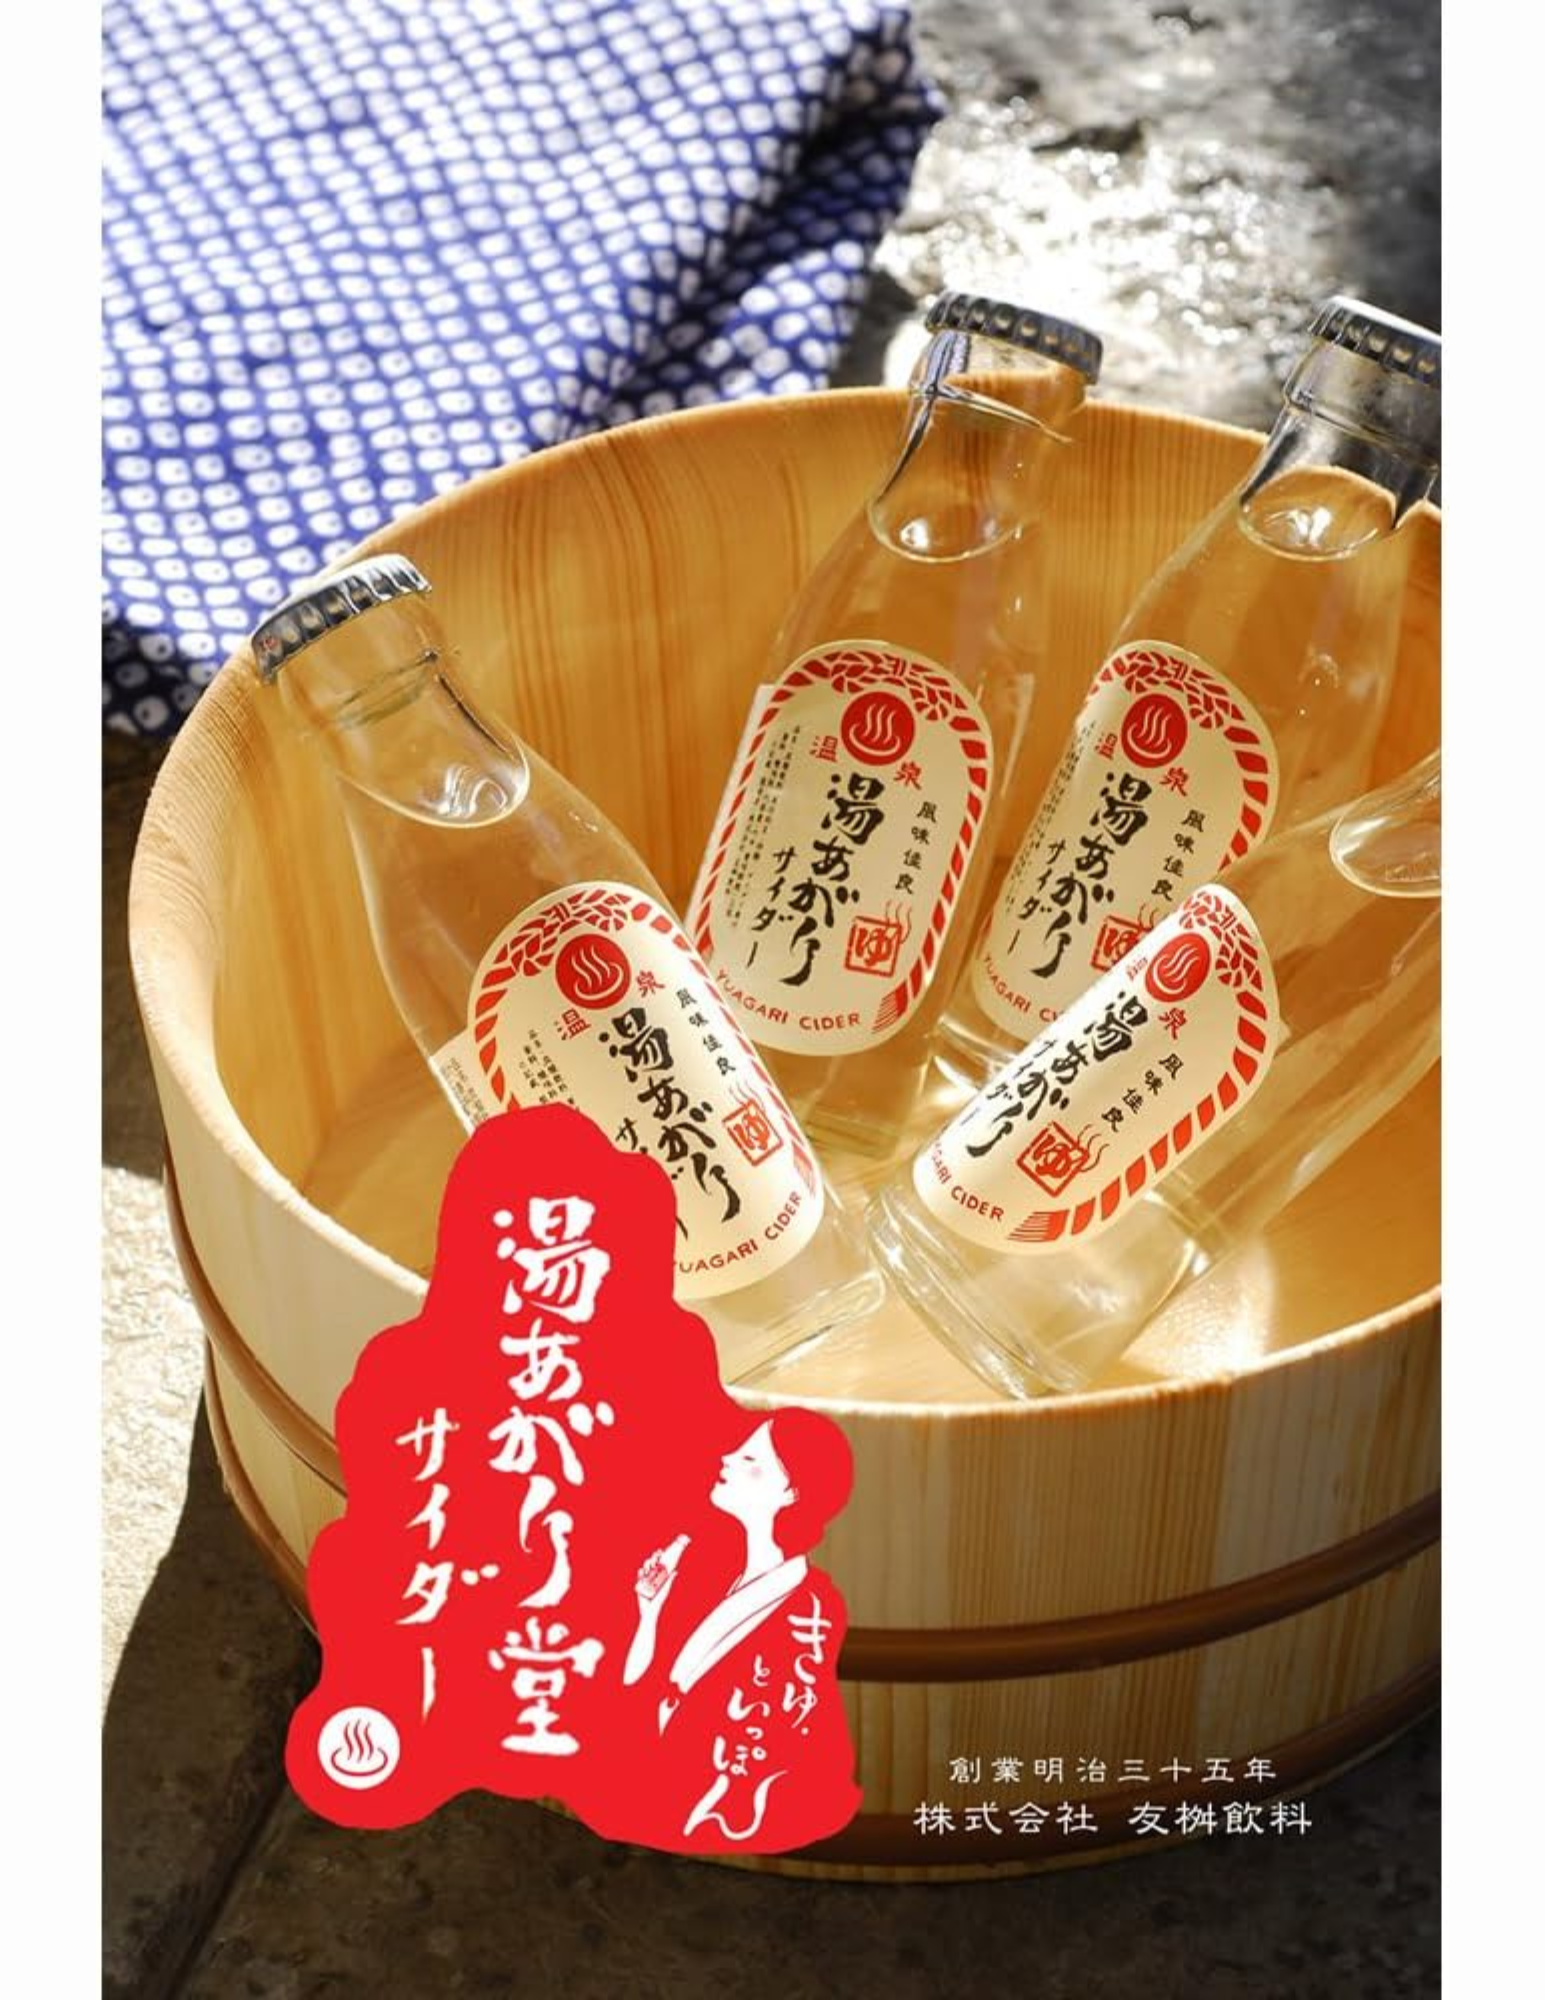 Tomomasu Retro Cider